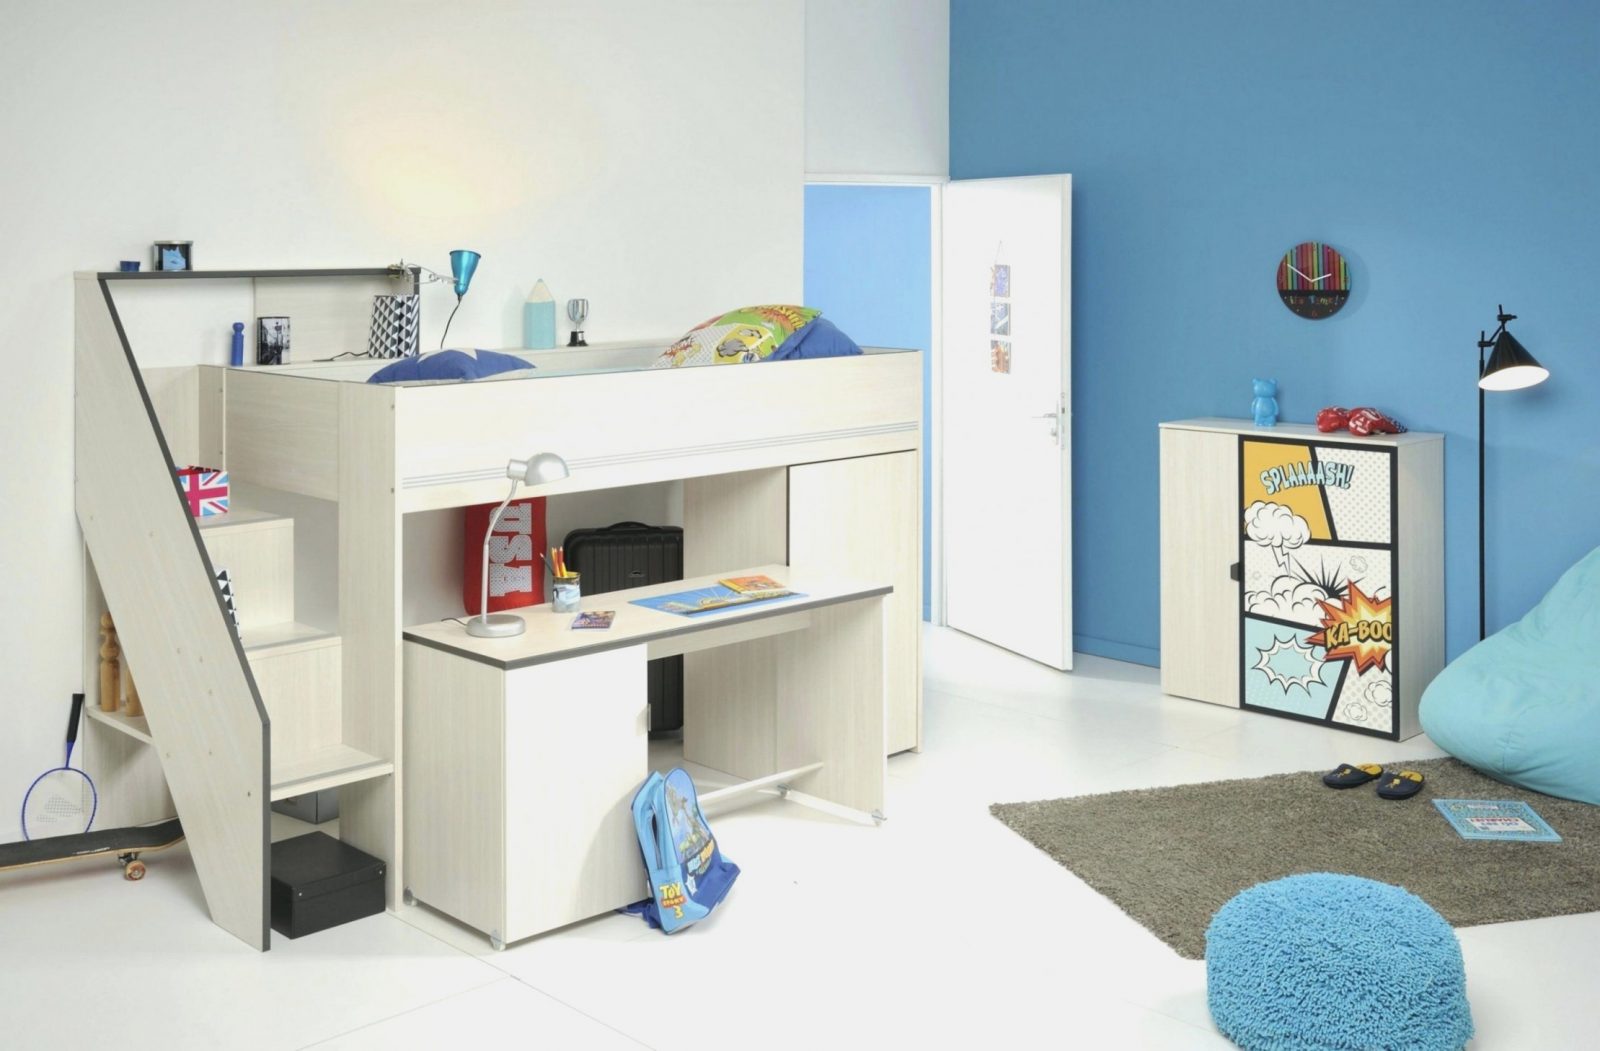 Ten Taboos Über Kinderbett Mit  Home Designinformationen von Kinderbett Mit Schreibtisch Und Kleiderschrank Photo